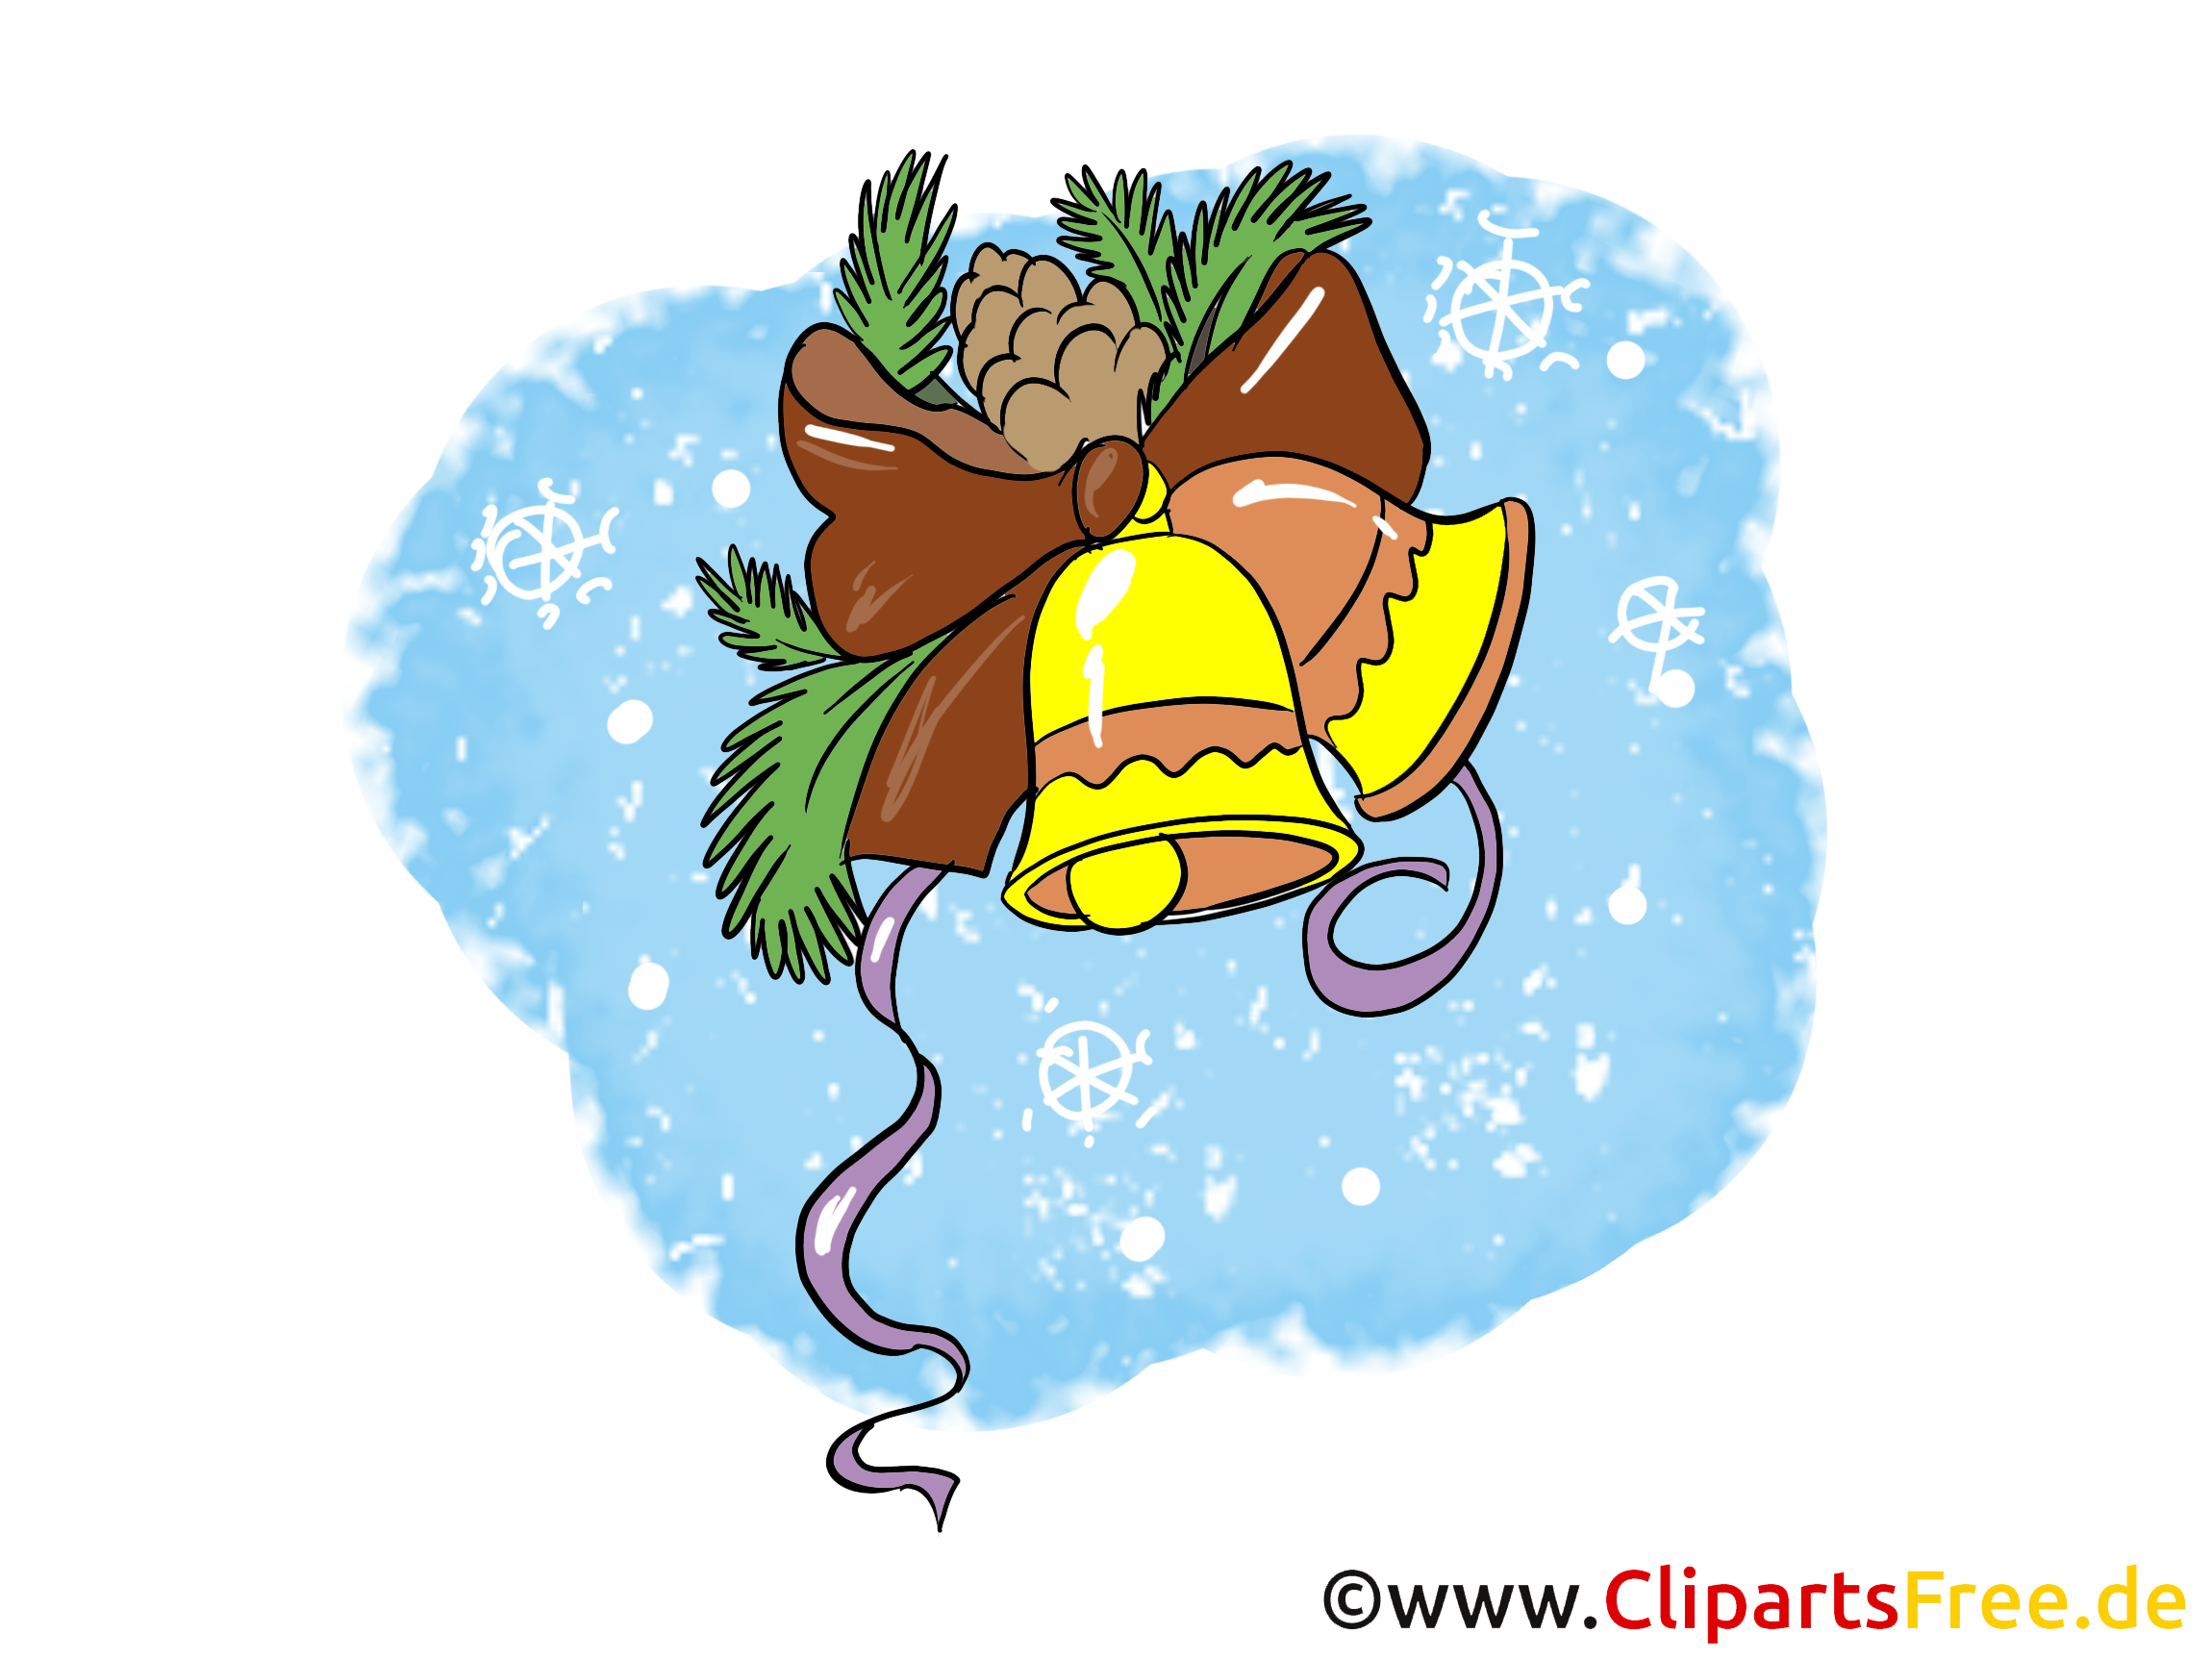 clipart weihnachten freeware - photo #25